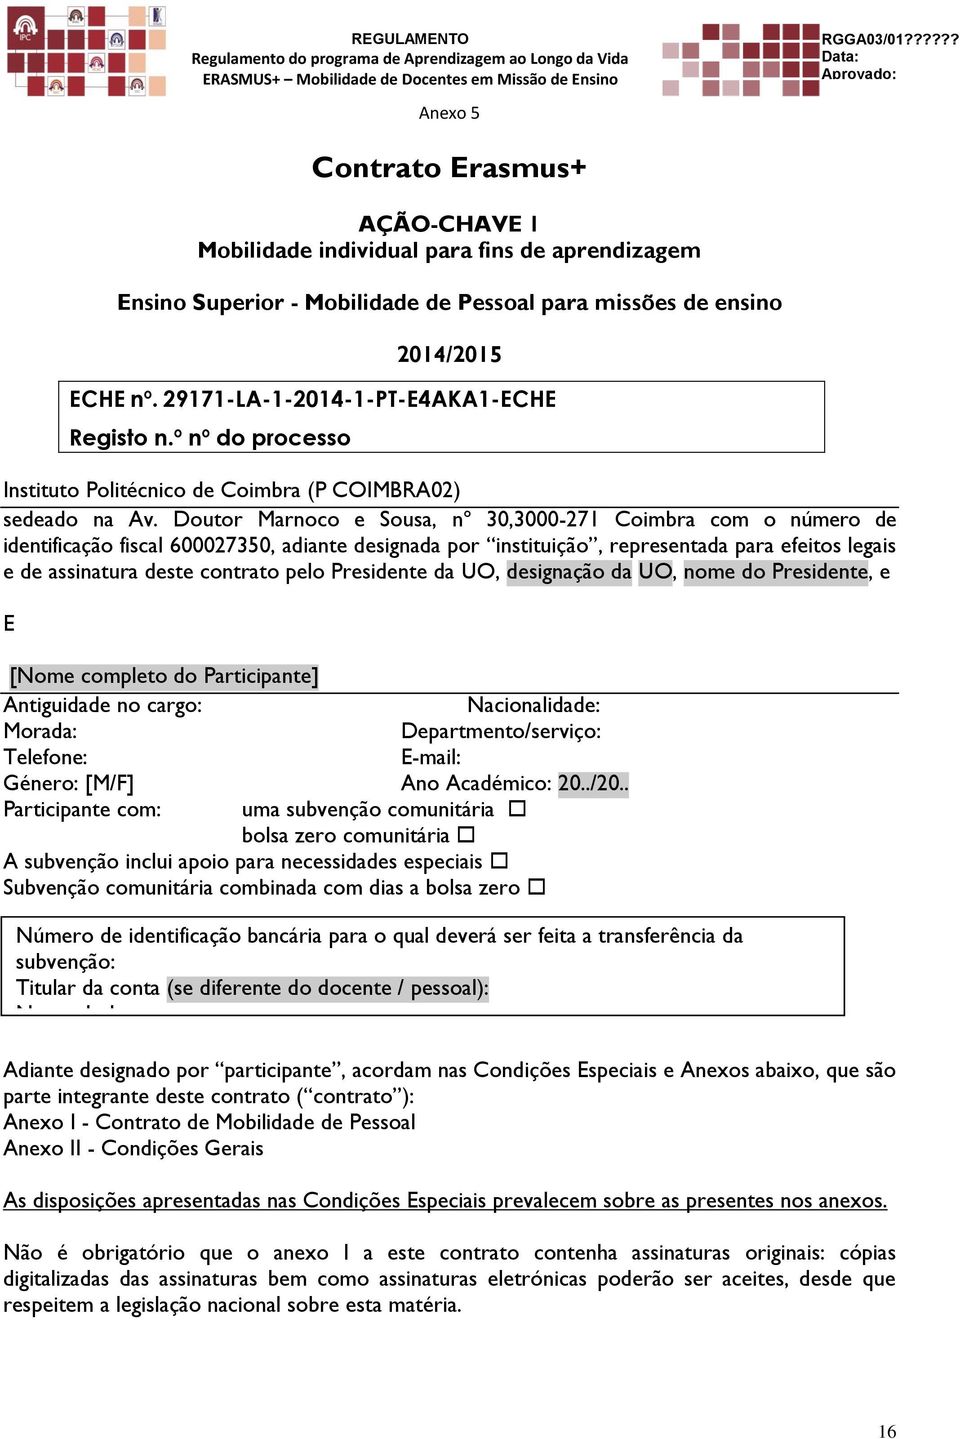 Doutor Marnoco e Sousa, nº 30,3000-271 Coimbra com o número de identificação fiscal 600027350, adiante designada por instituição, representada para efeitos legais e de assinatura deste contrato pelo